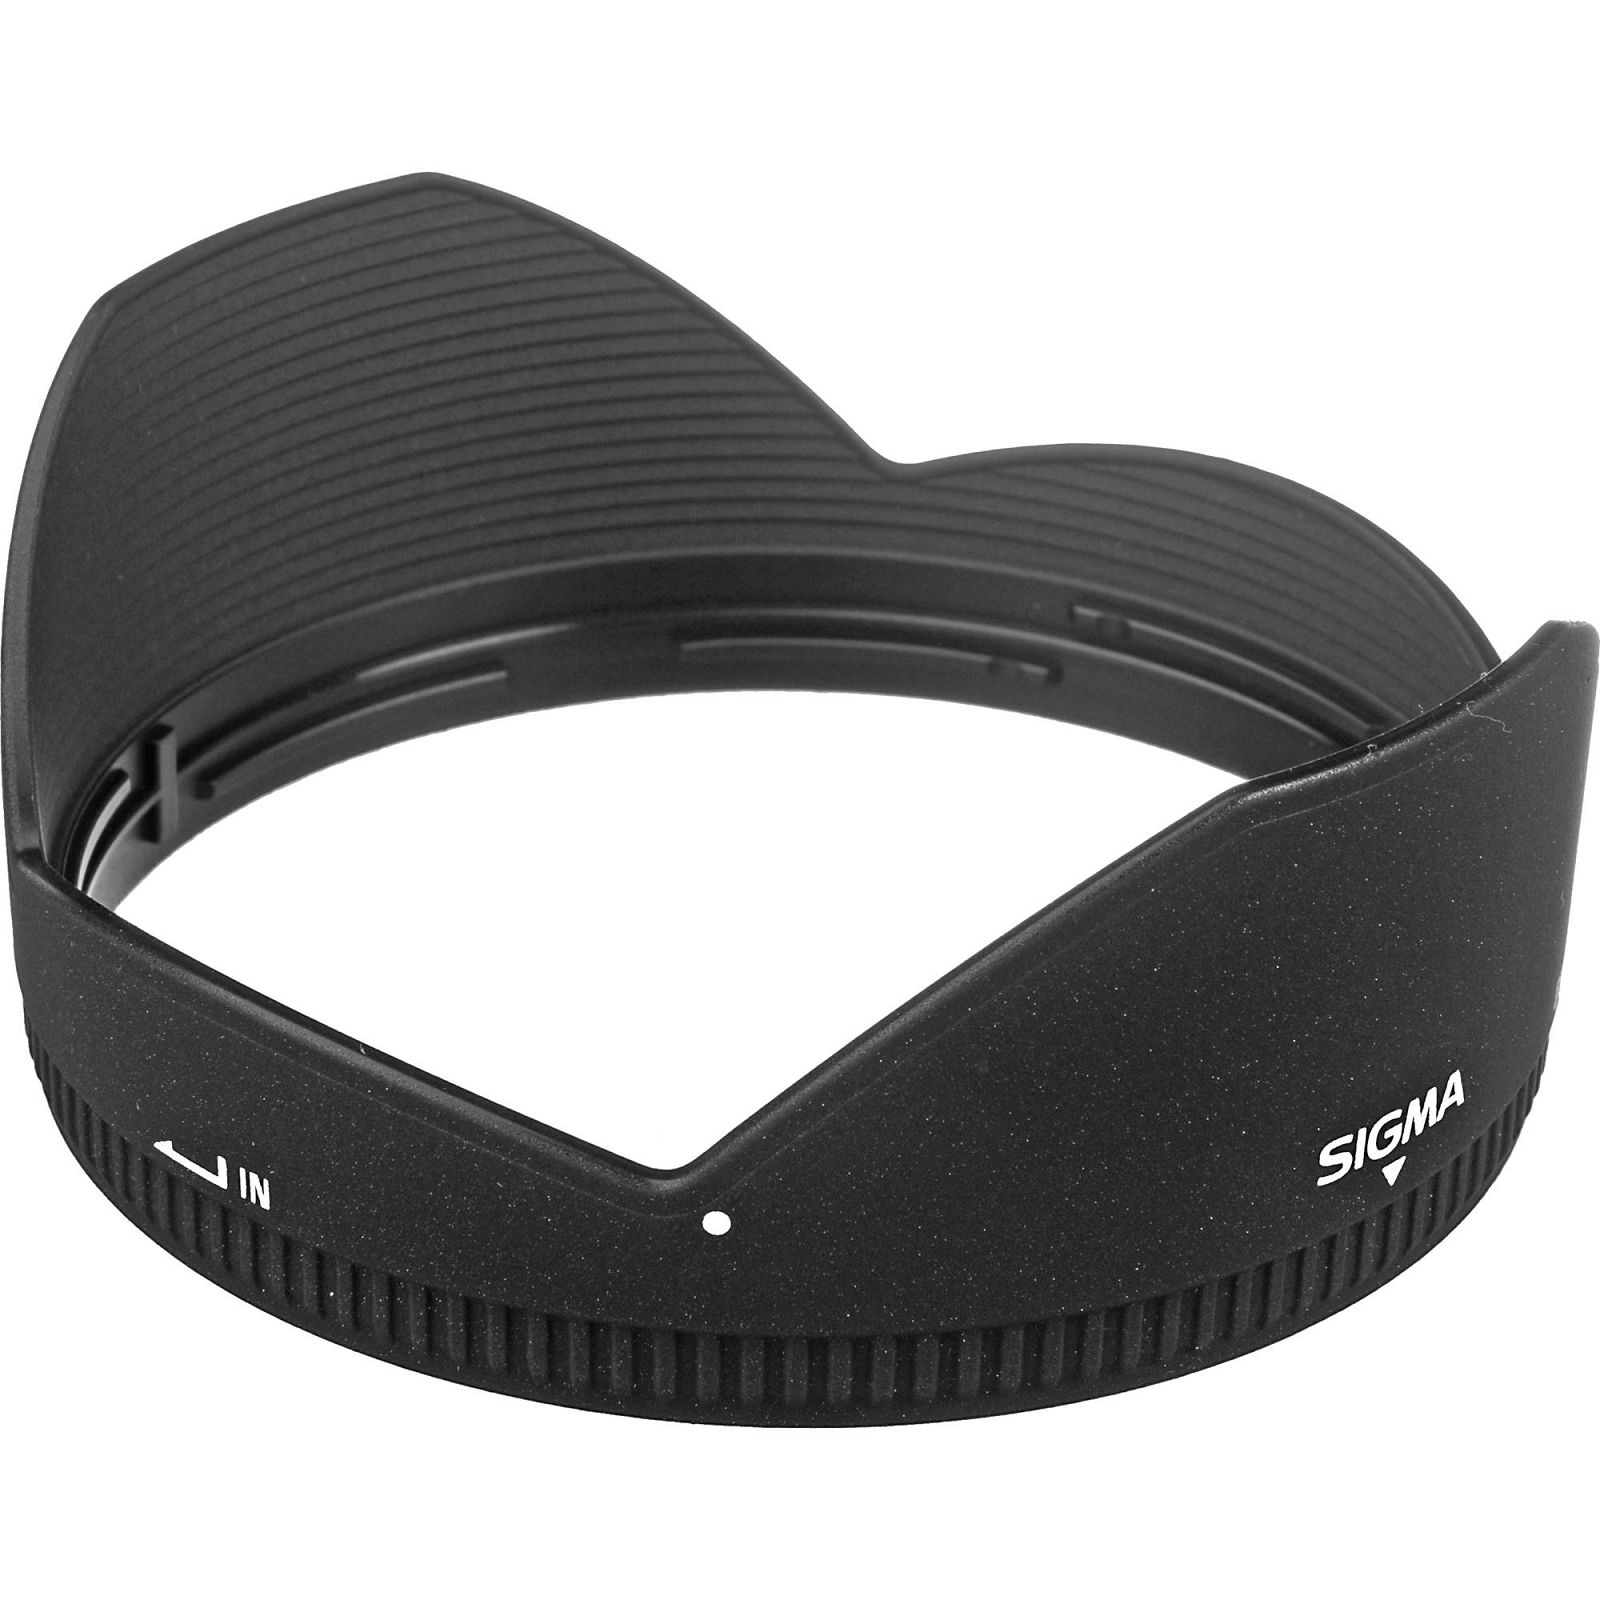 Sigma 10-20mm f/3.5 EX DC HSM ultra širokokutni objektiv za Sigma SA 10-20/3,5 10-20 F3,5 F3.5 3.5 autofocus wide angle zoom lens (202956)